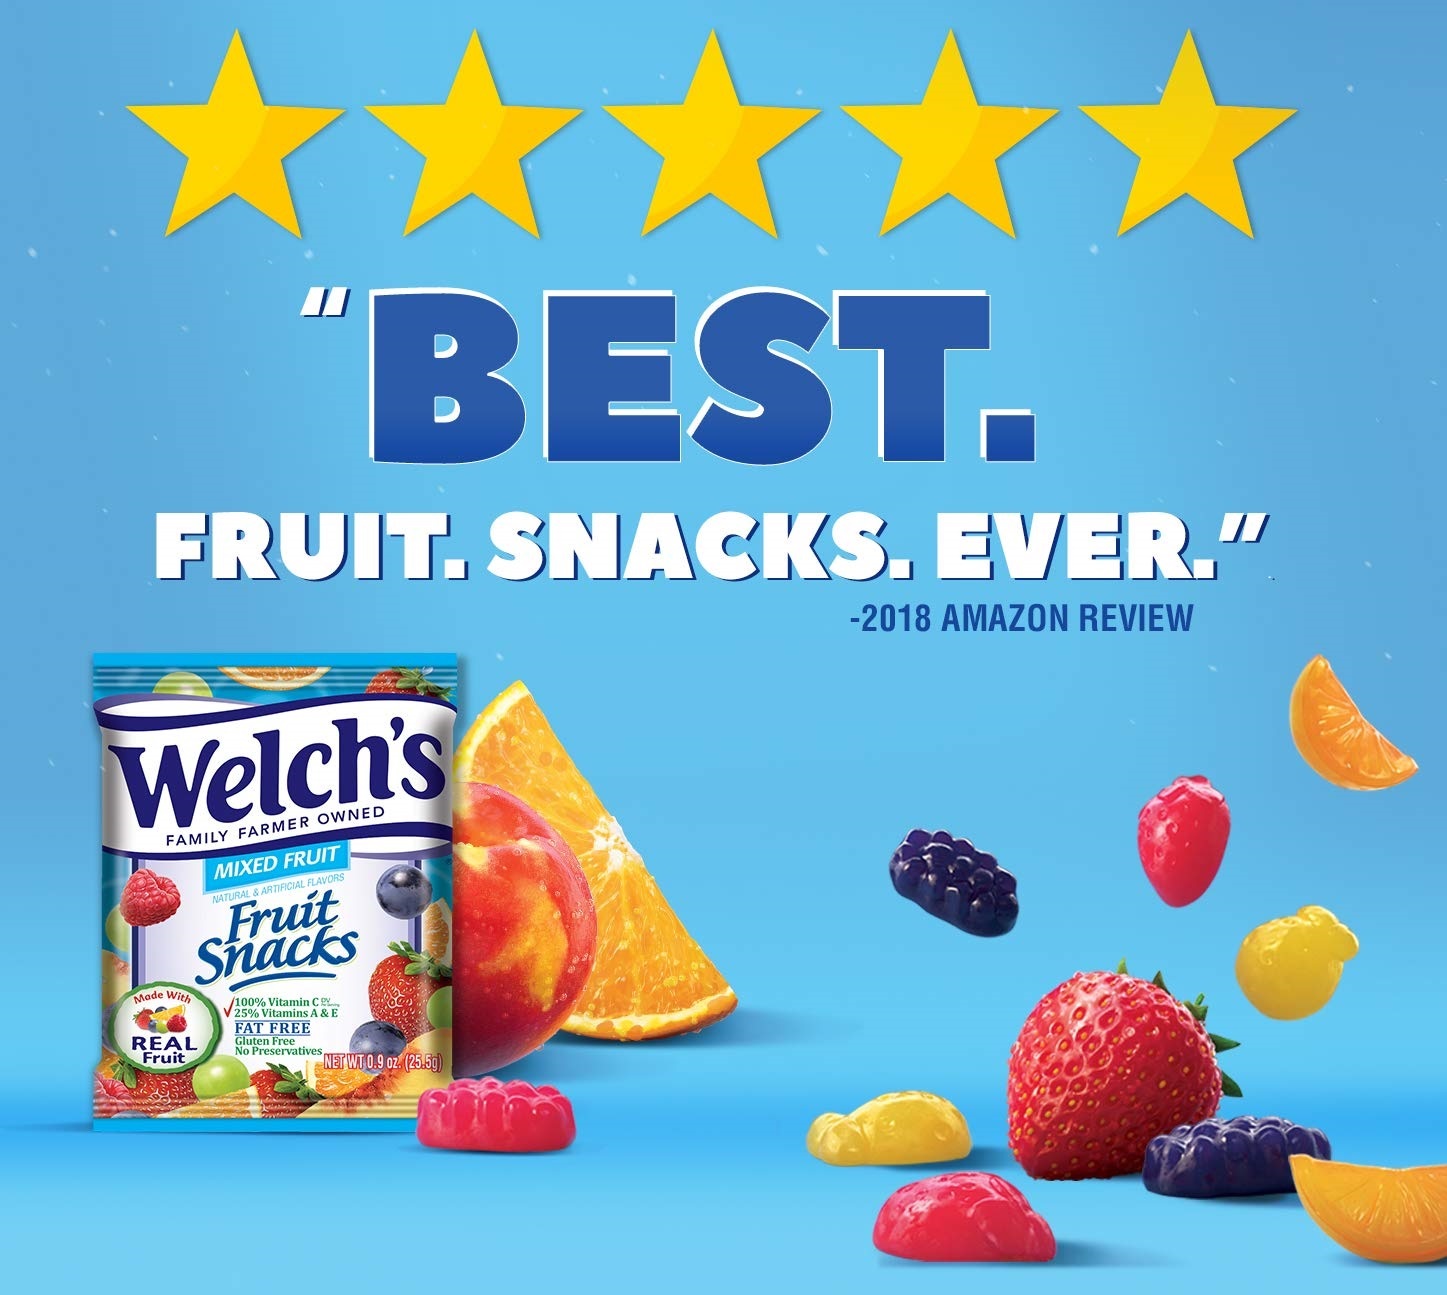 Kẹo dẻo trái cây hỗn hợp - Welch's Mixed Fruit Snack Chứa Vitamin A,C,E Giúp ăn ngon + bổ + khỏe  - QuaTangMe Extaste